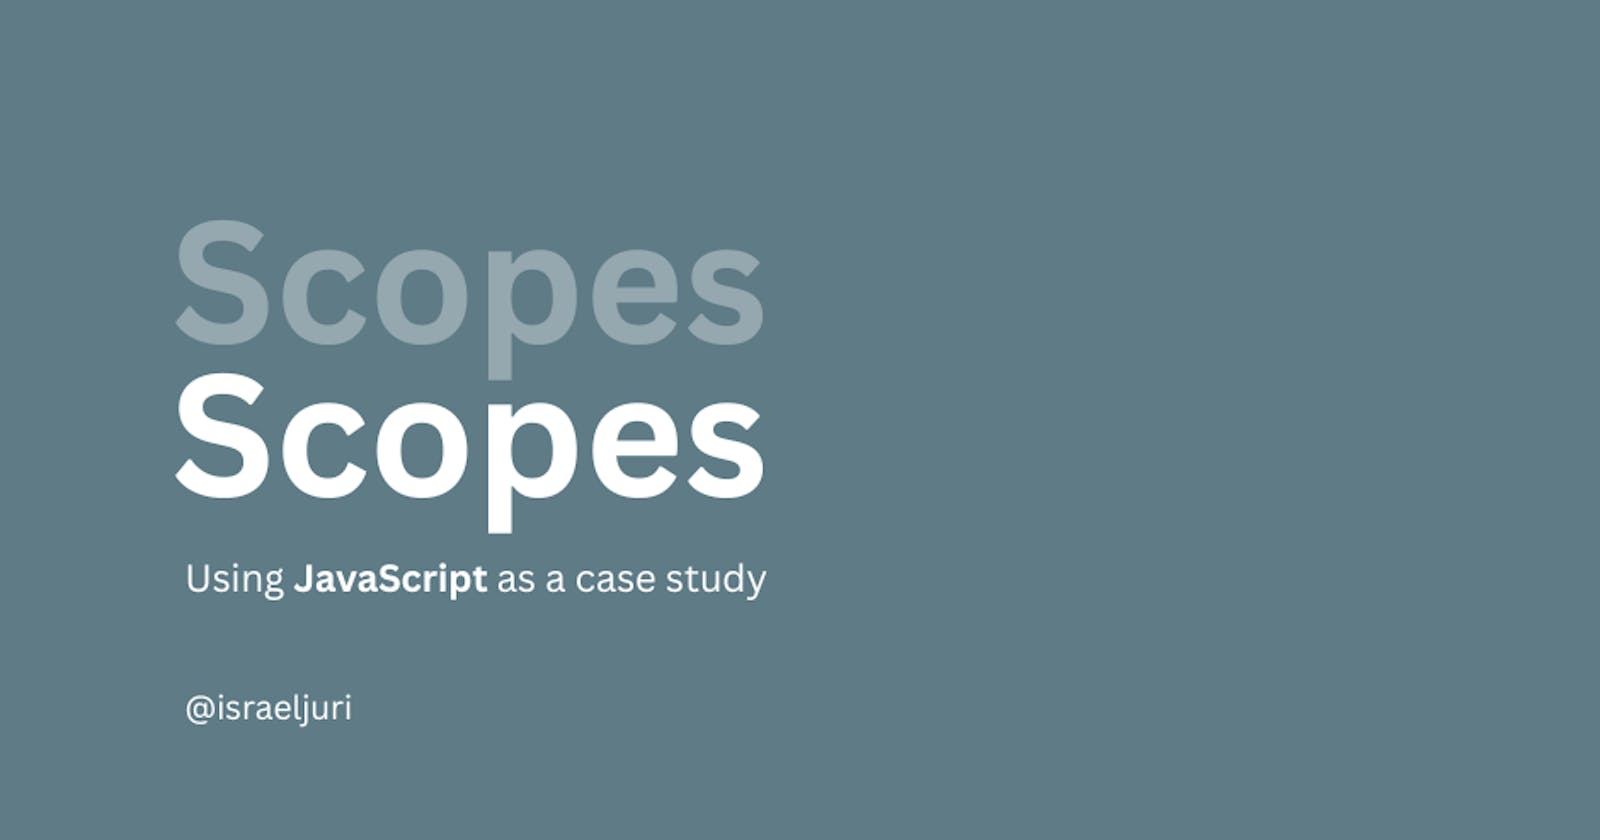 Scopes in JavaScript!